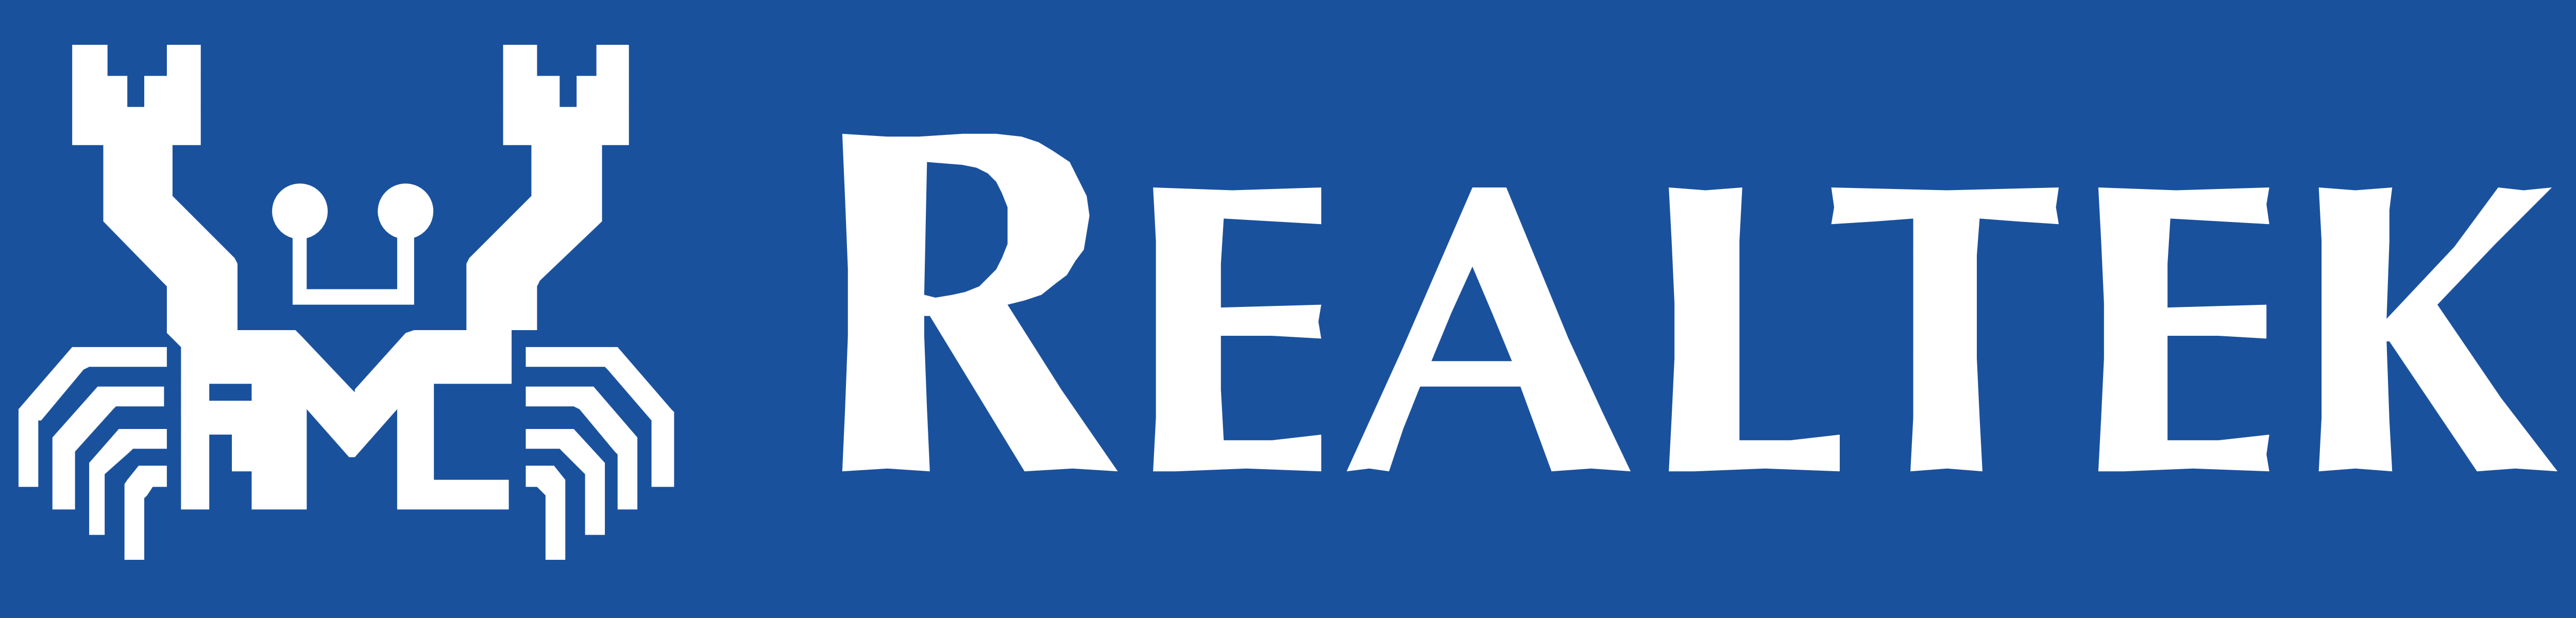 Realtek_logo_blue_bg.png